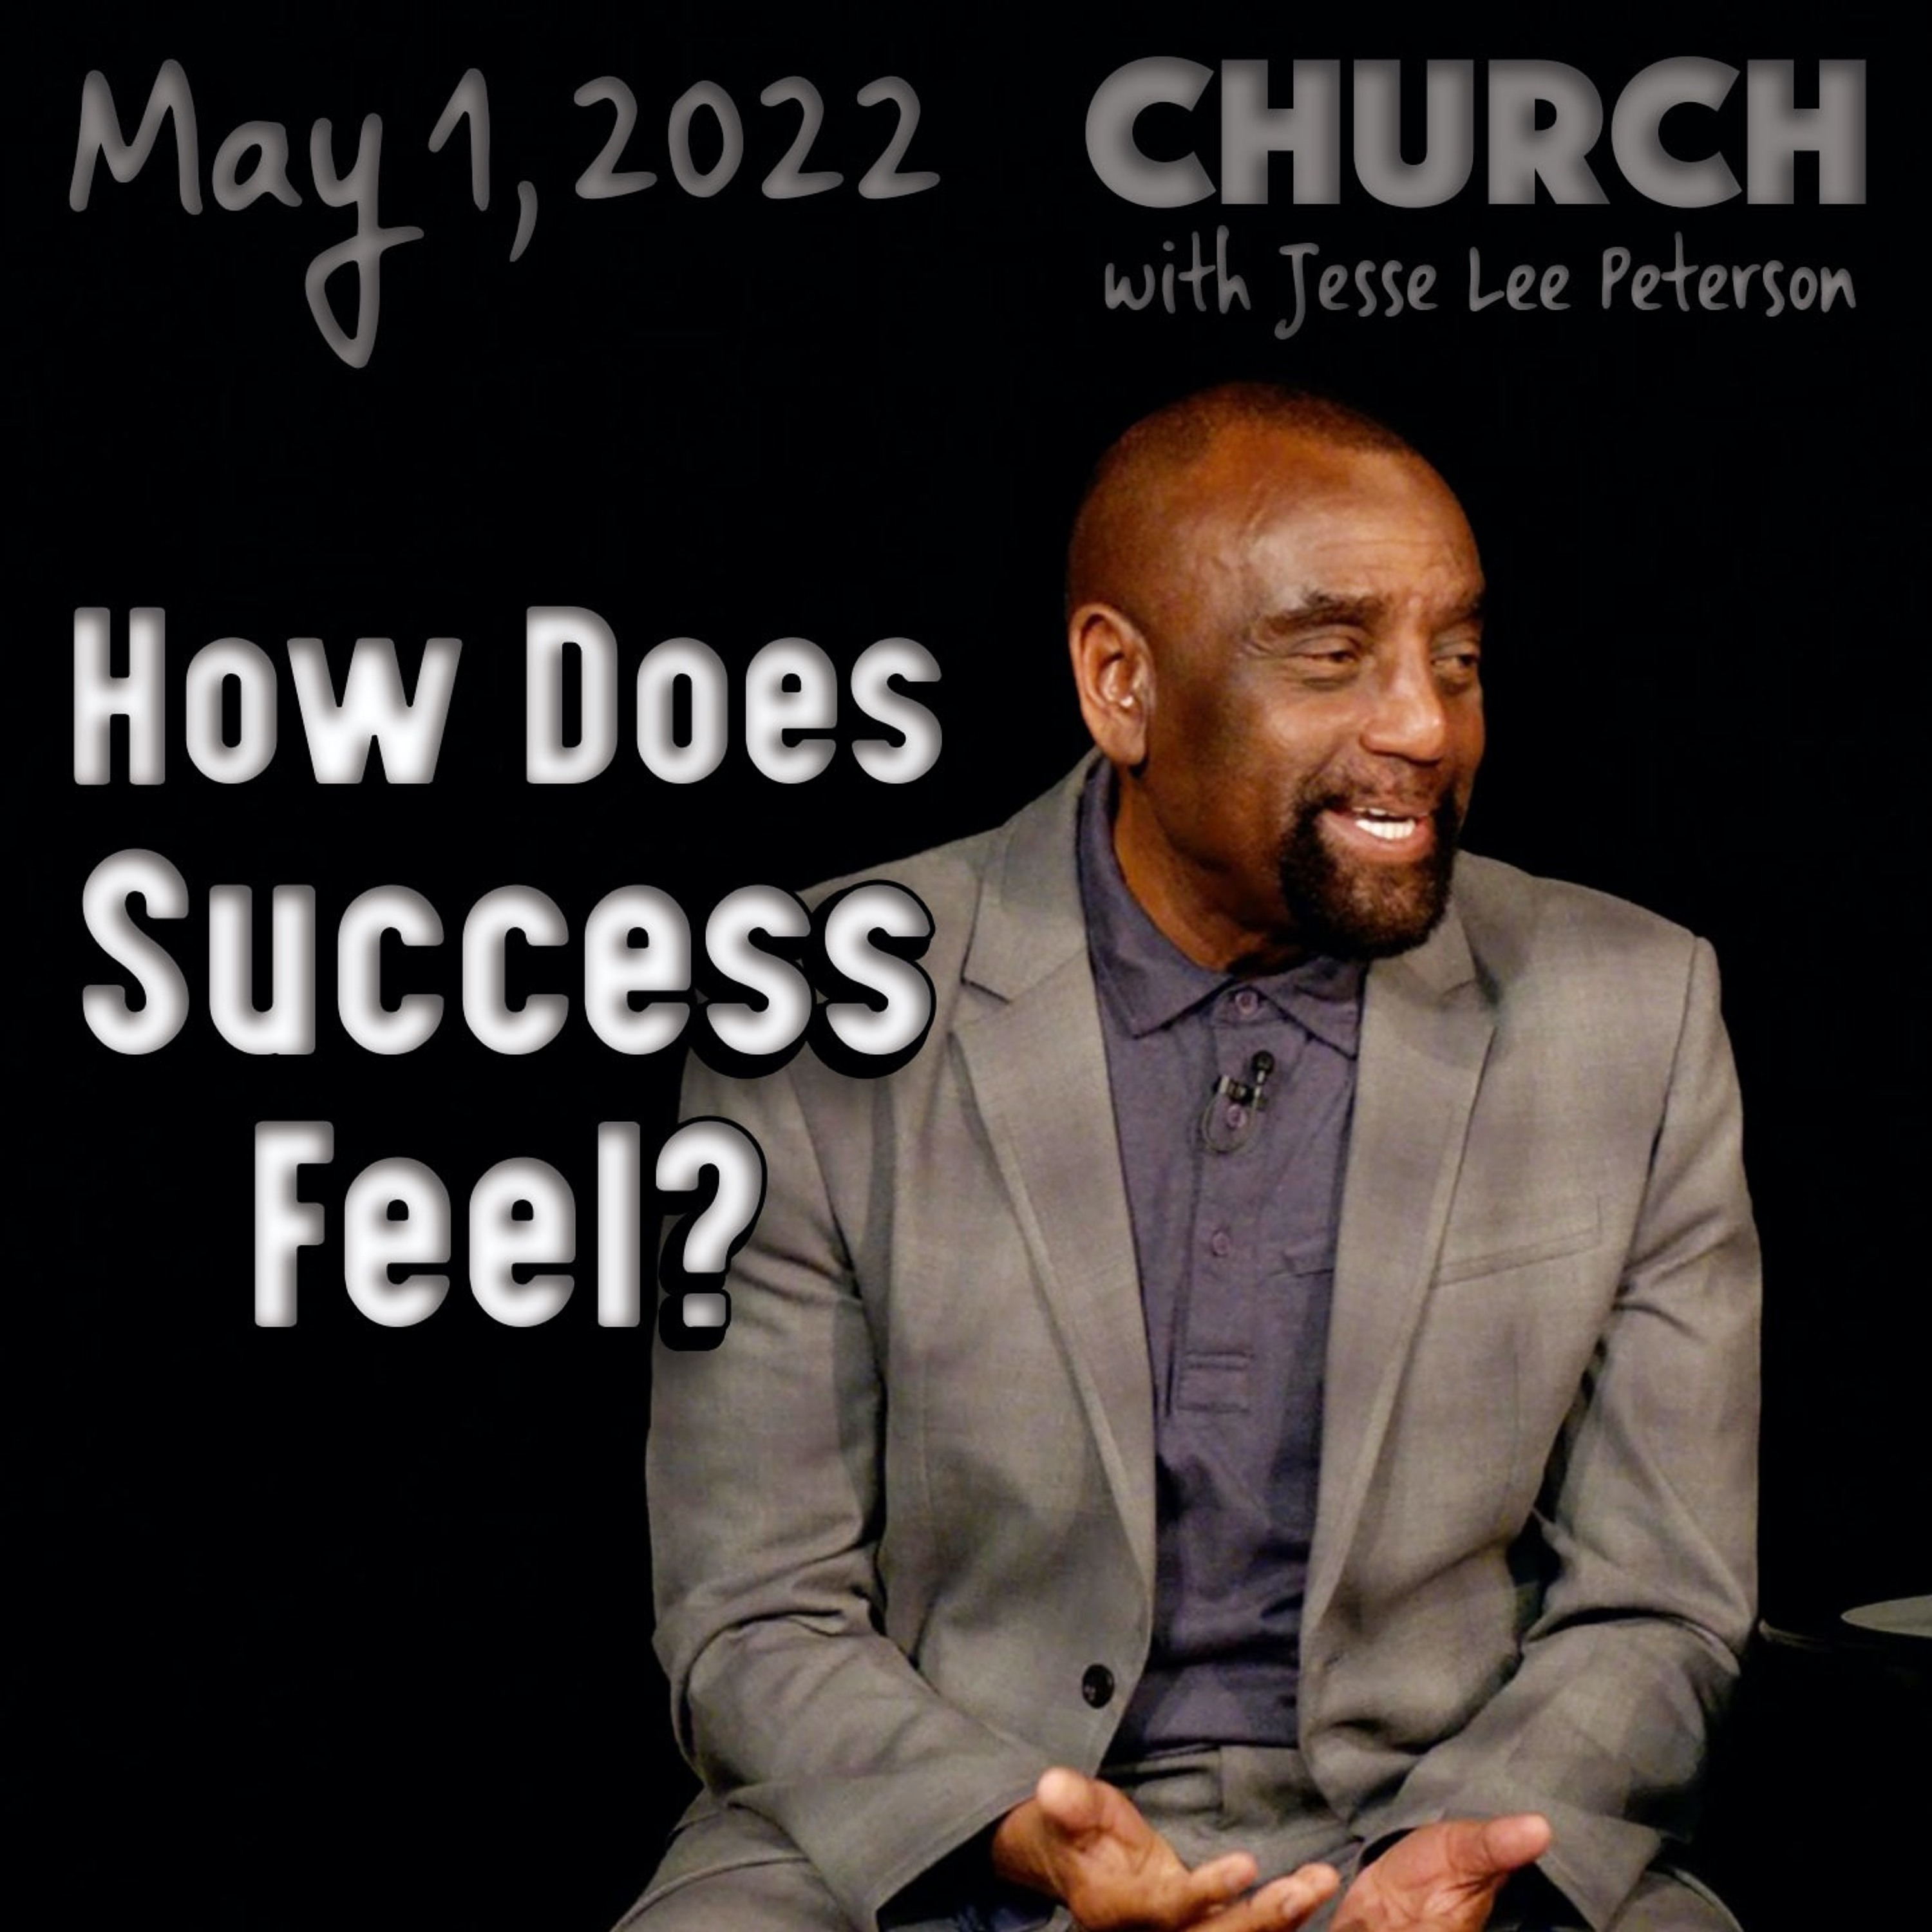 05/01/22 Do You Feel Successful or Like a Failure? (Church)